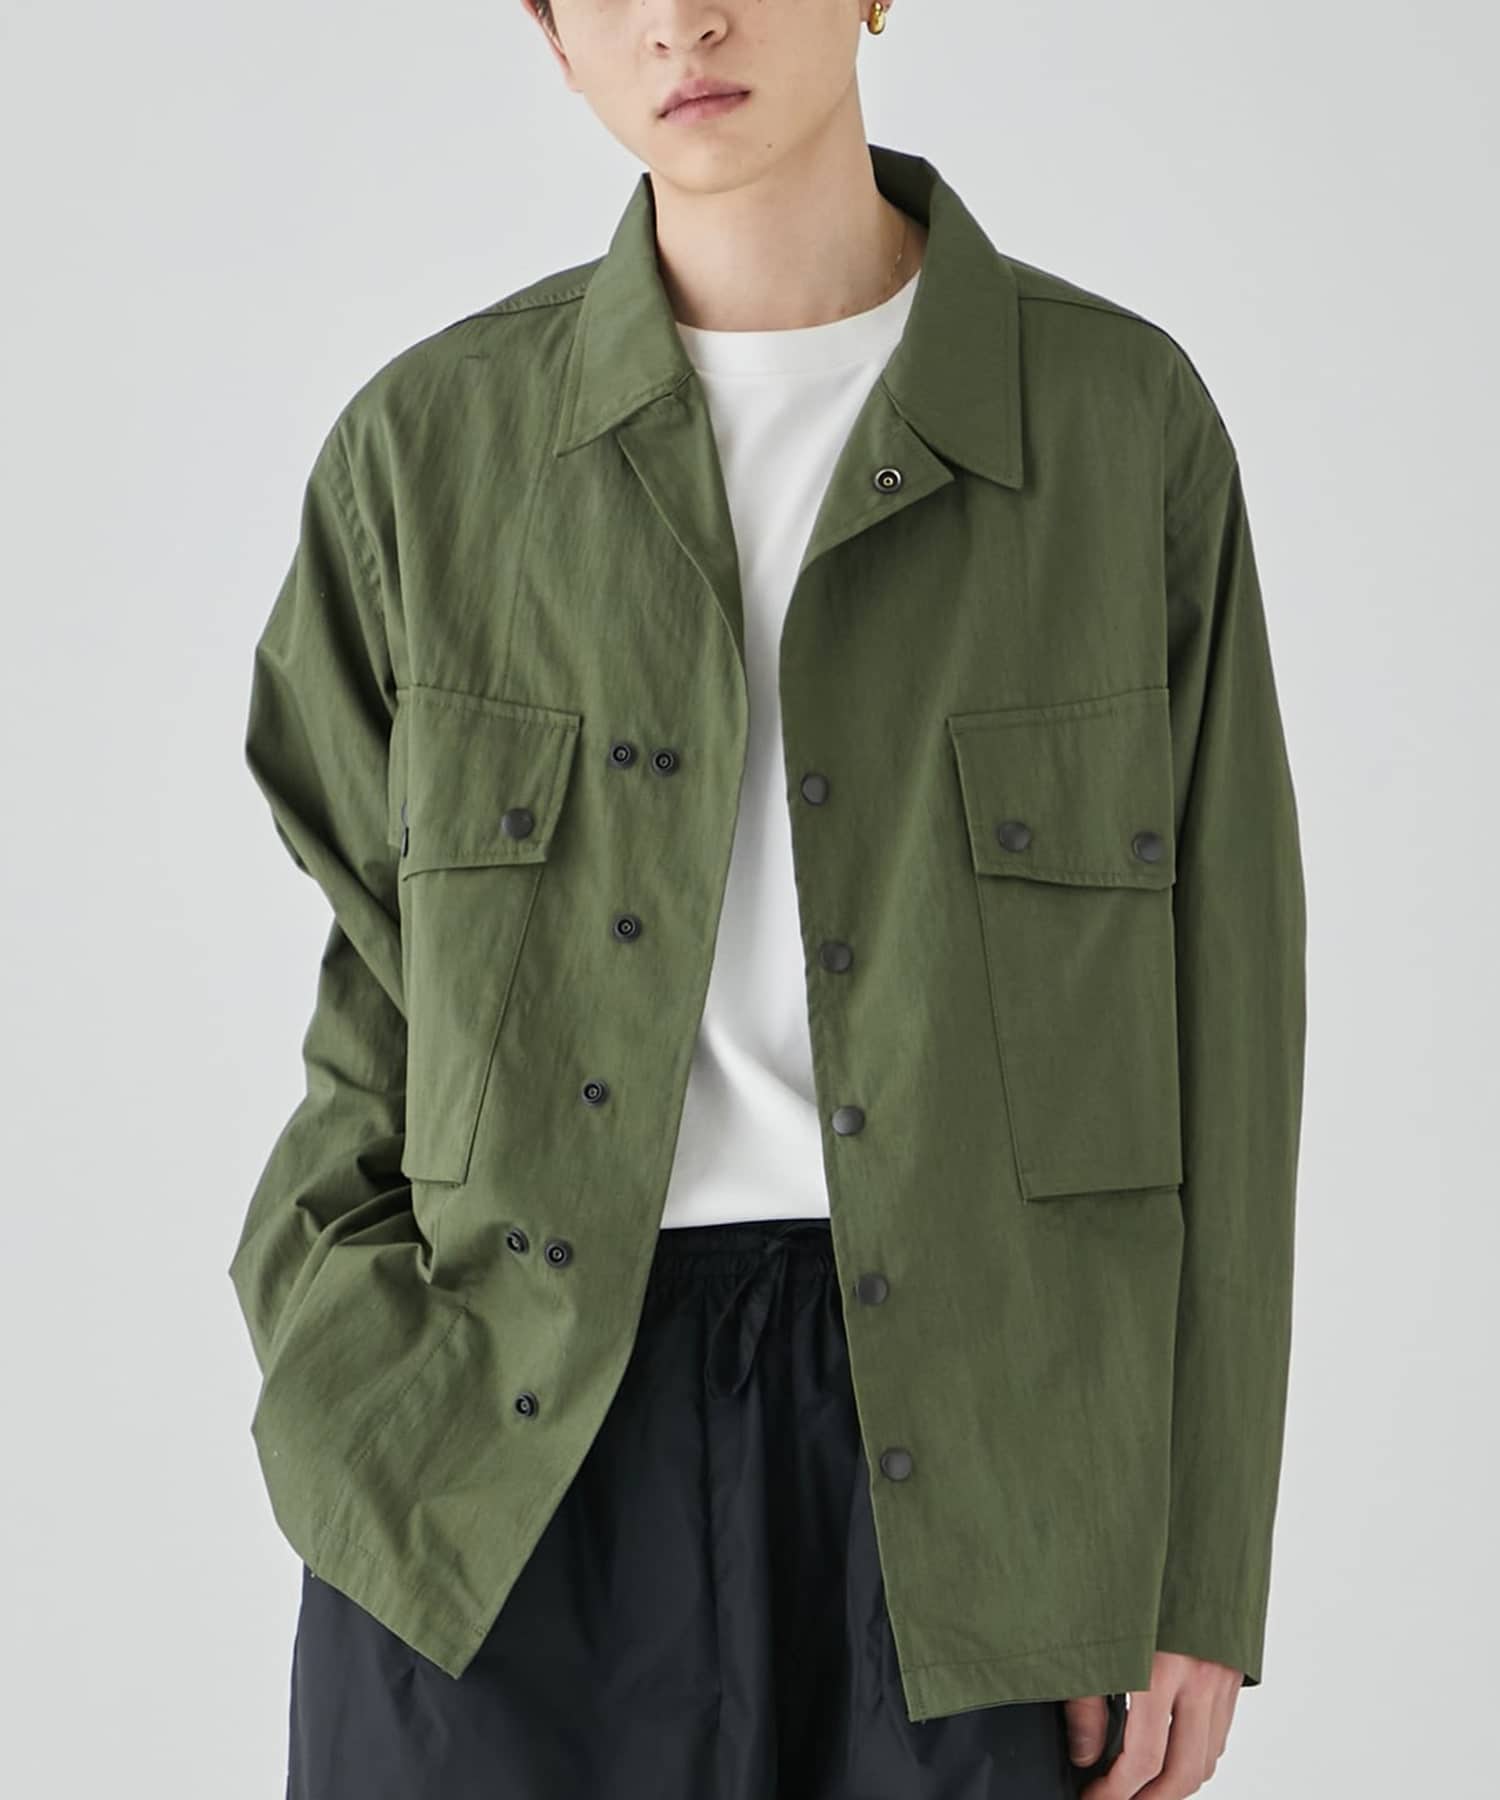 Field Jacket - C/N Oxford Cloth